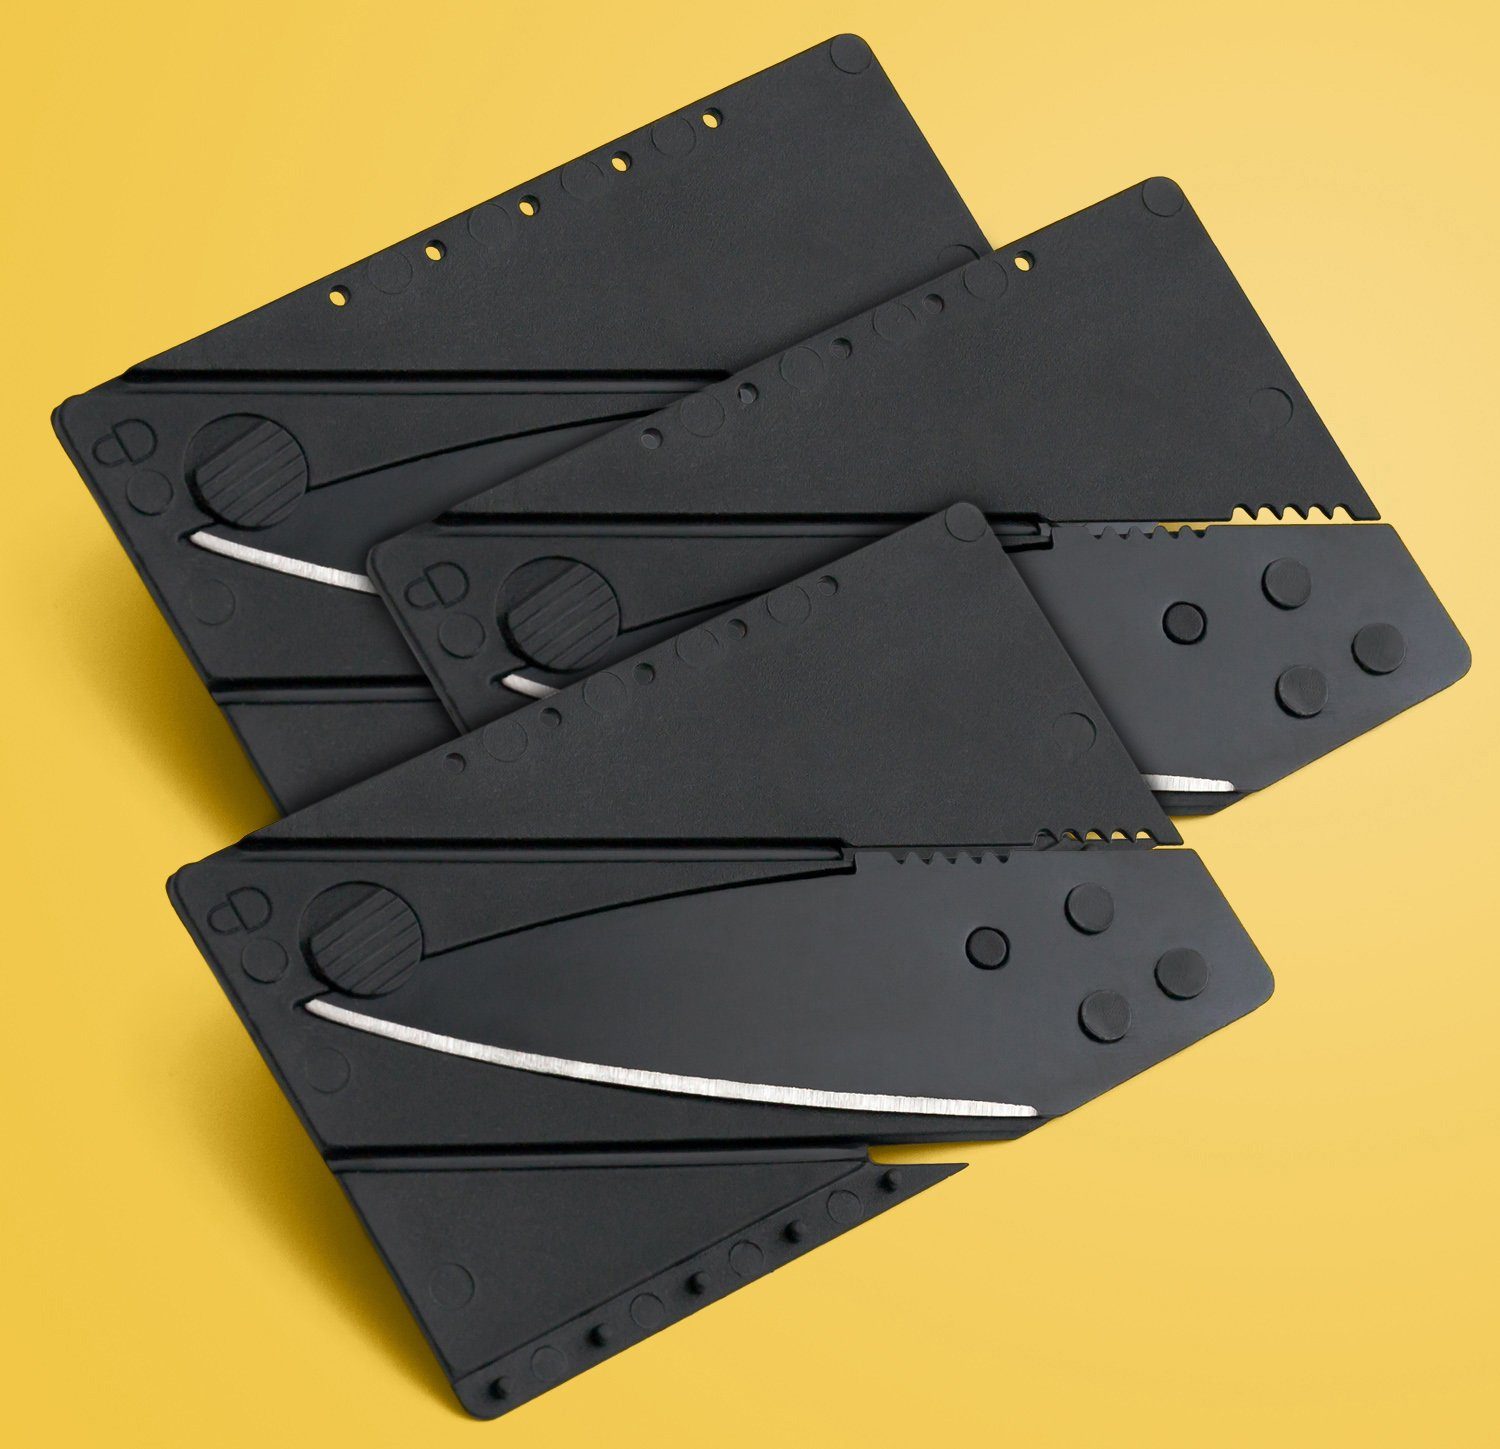 PRECORN Universalmesser 3 x Kreditkarten-Messer Faltmesser Klappmesser Camping Taschenmesser, (3 St)